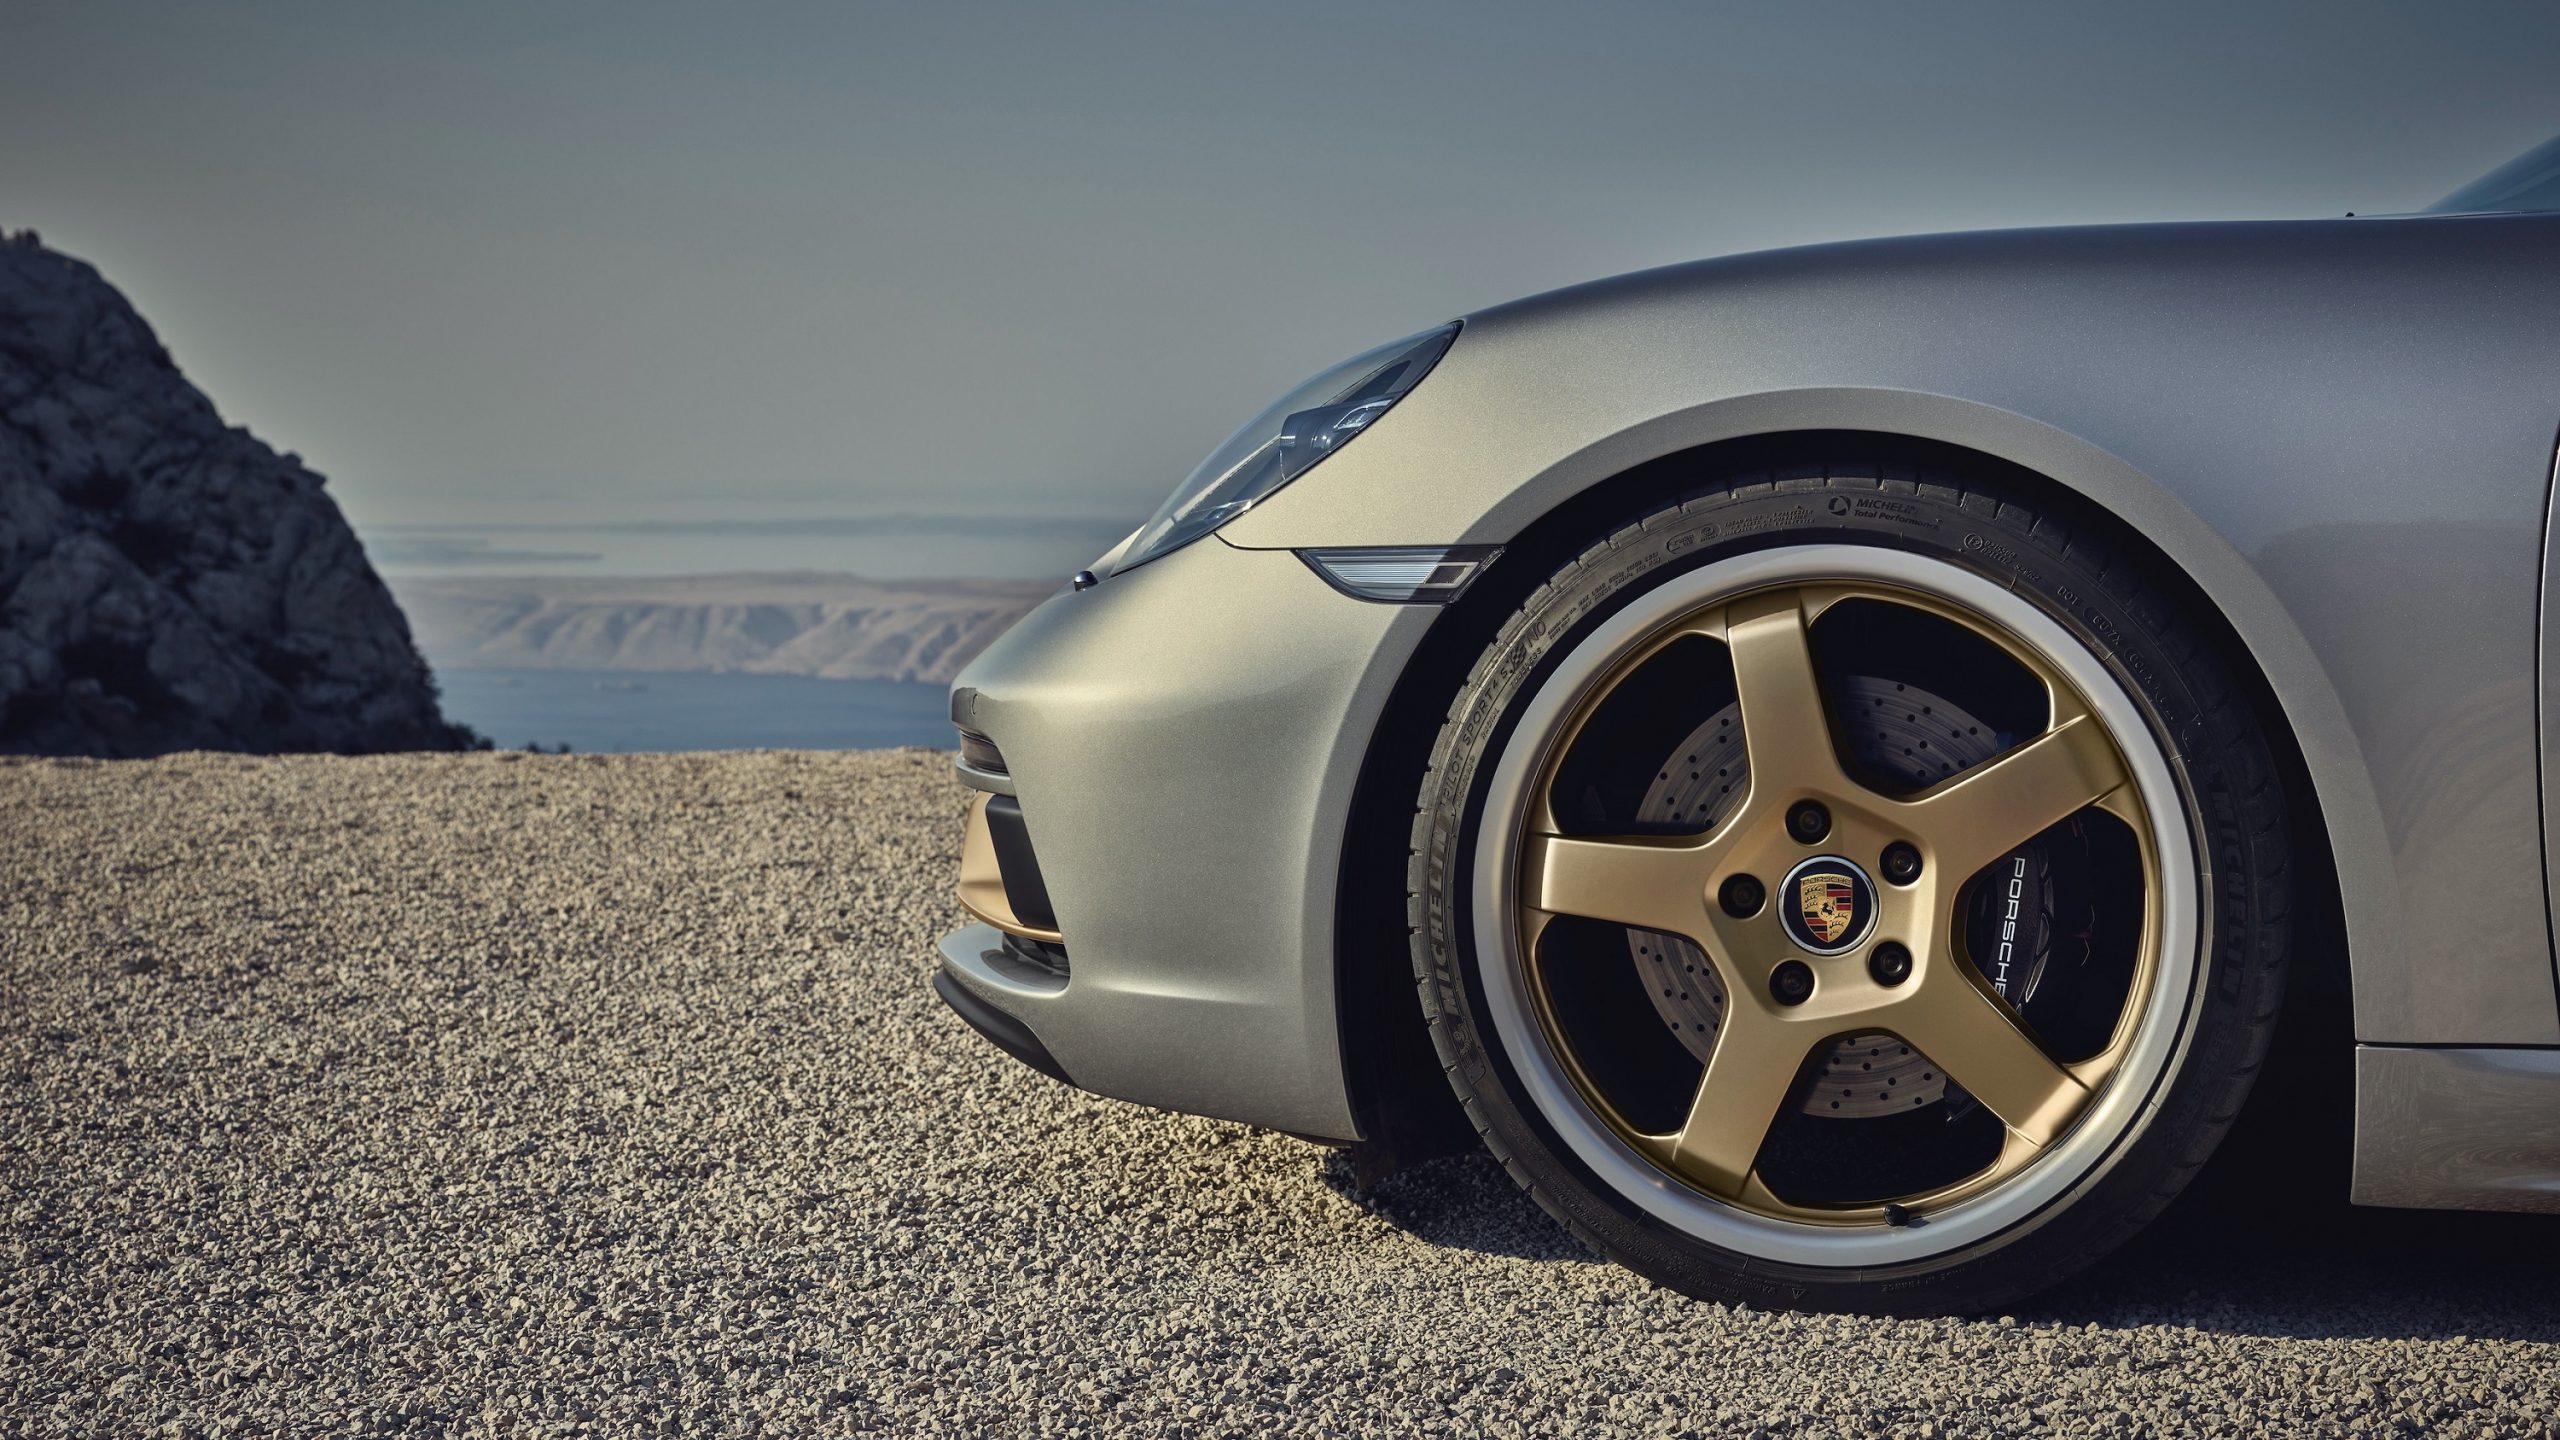 The bronze wheel of the Porsche Boxster Anniversary